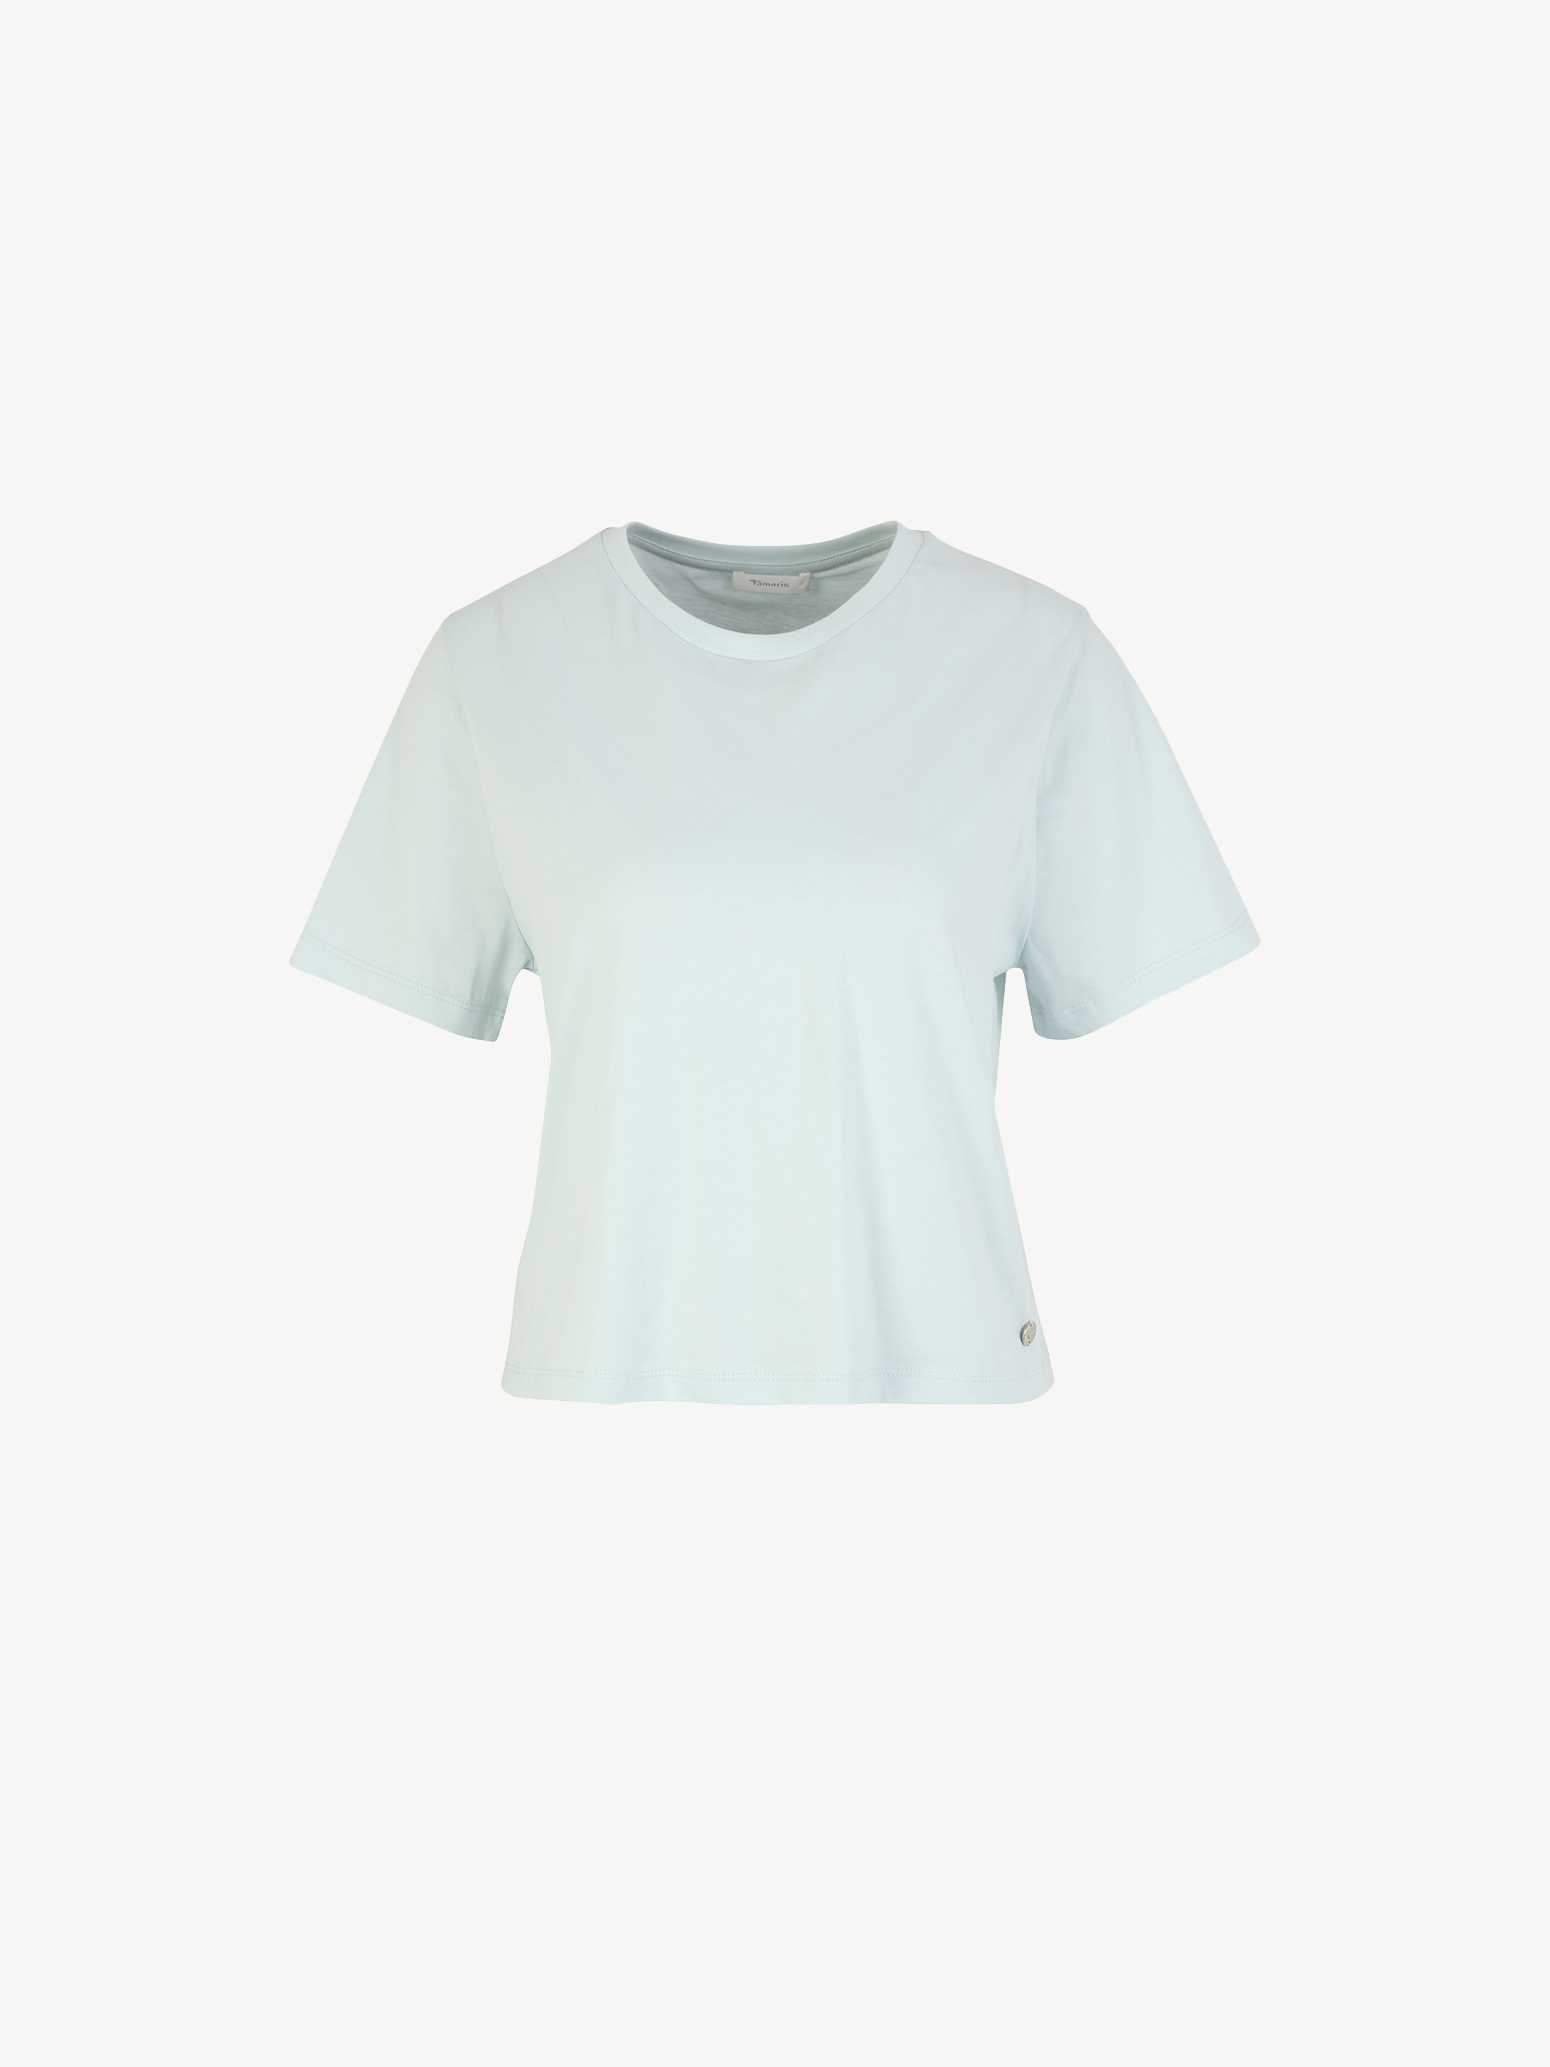 Buy Tamaris Shirts & Tops online now!